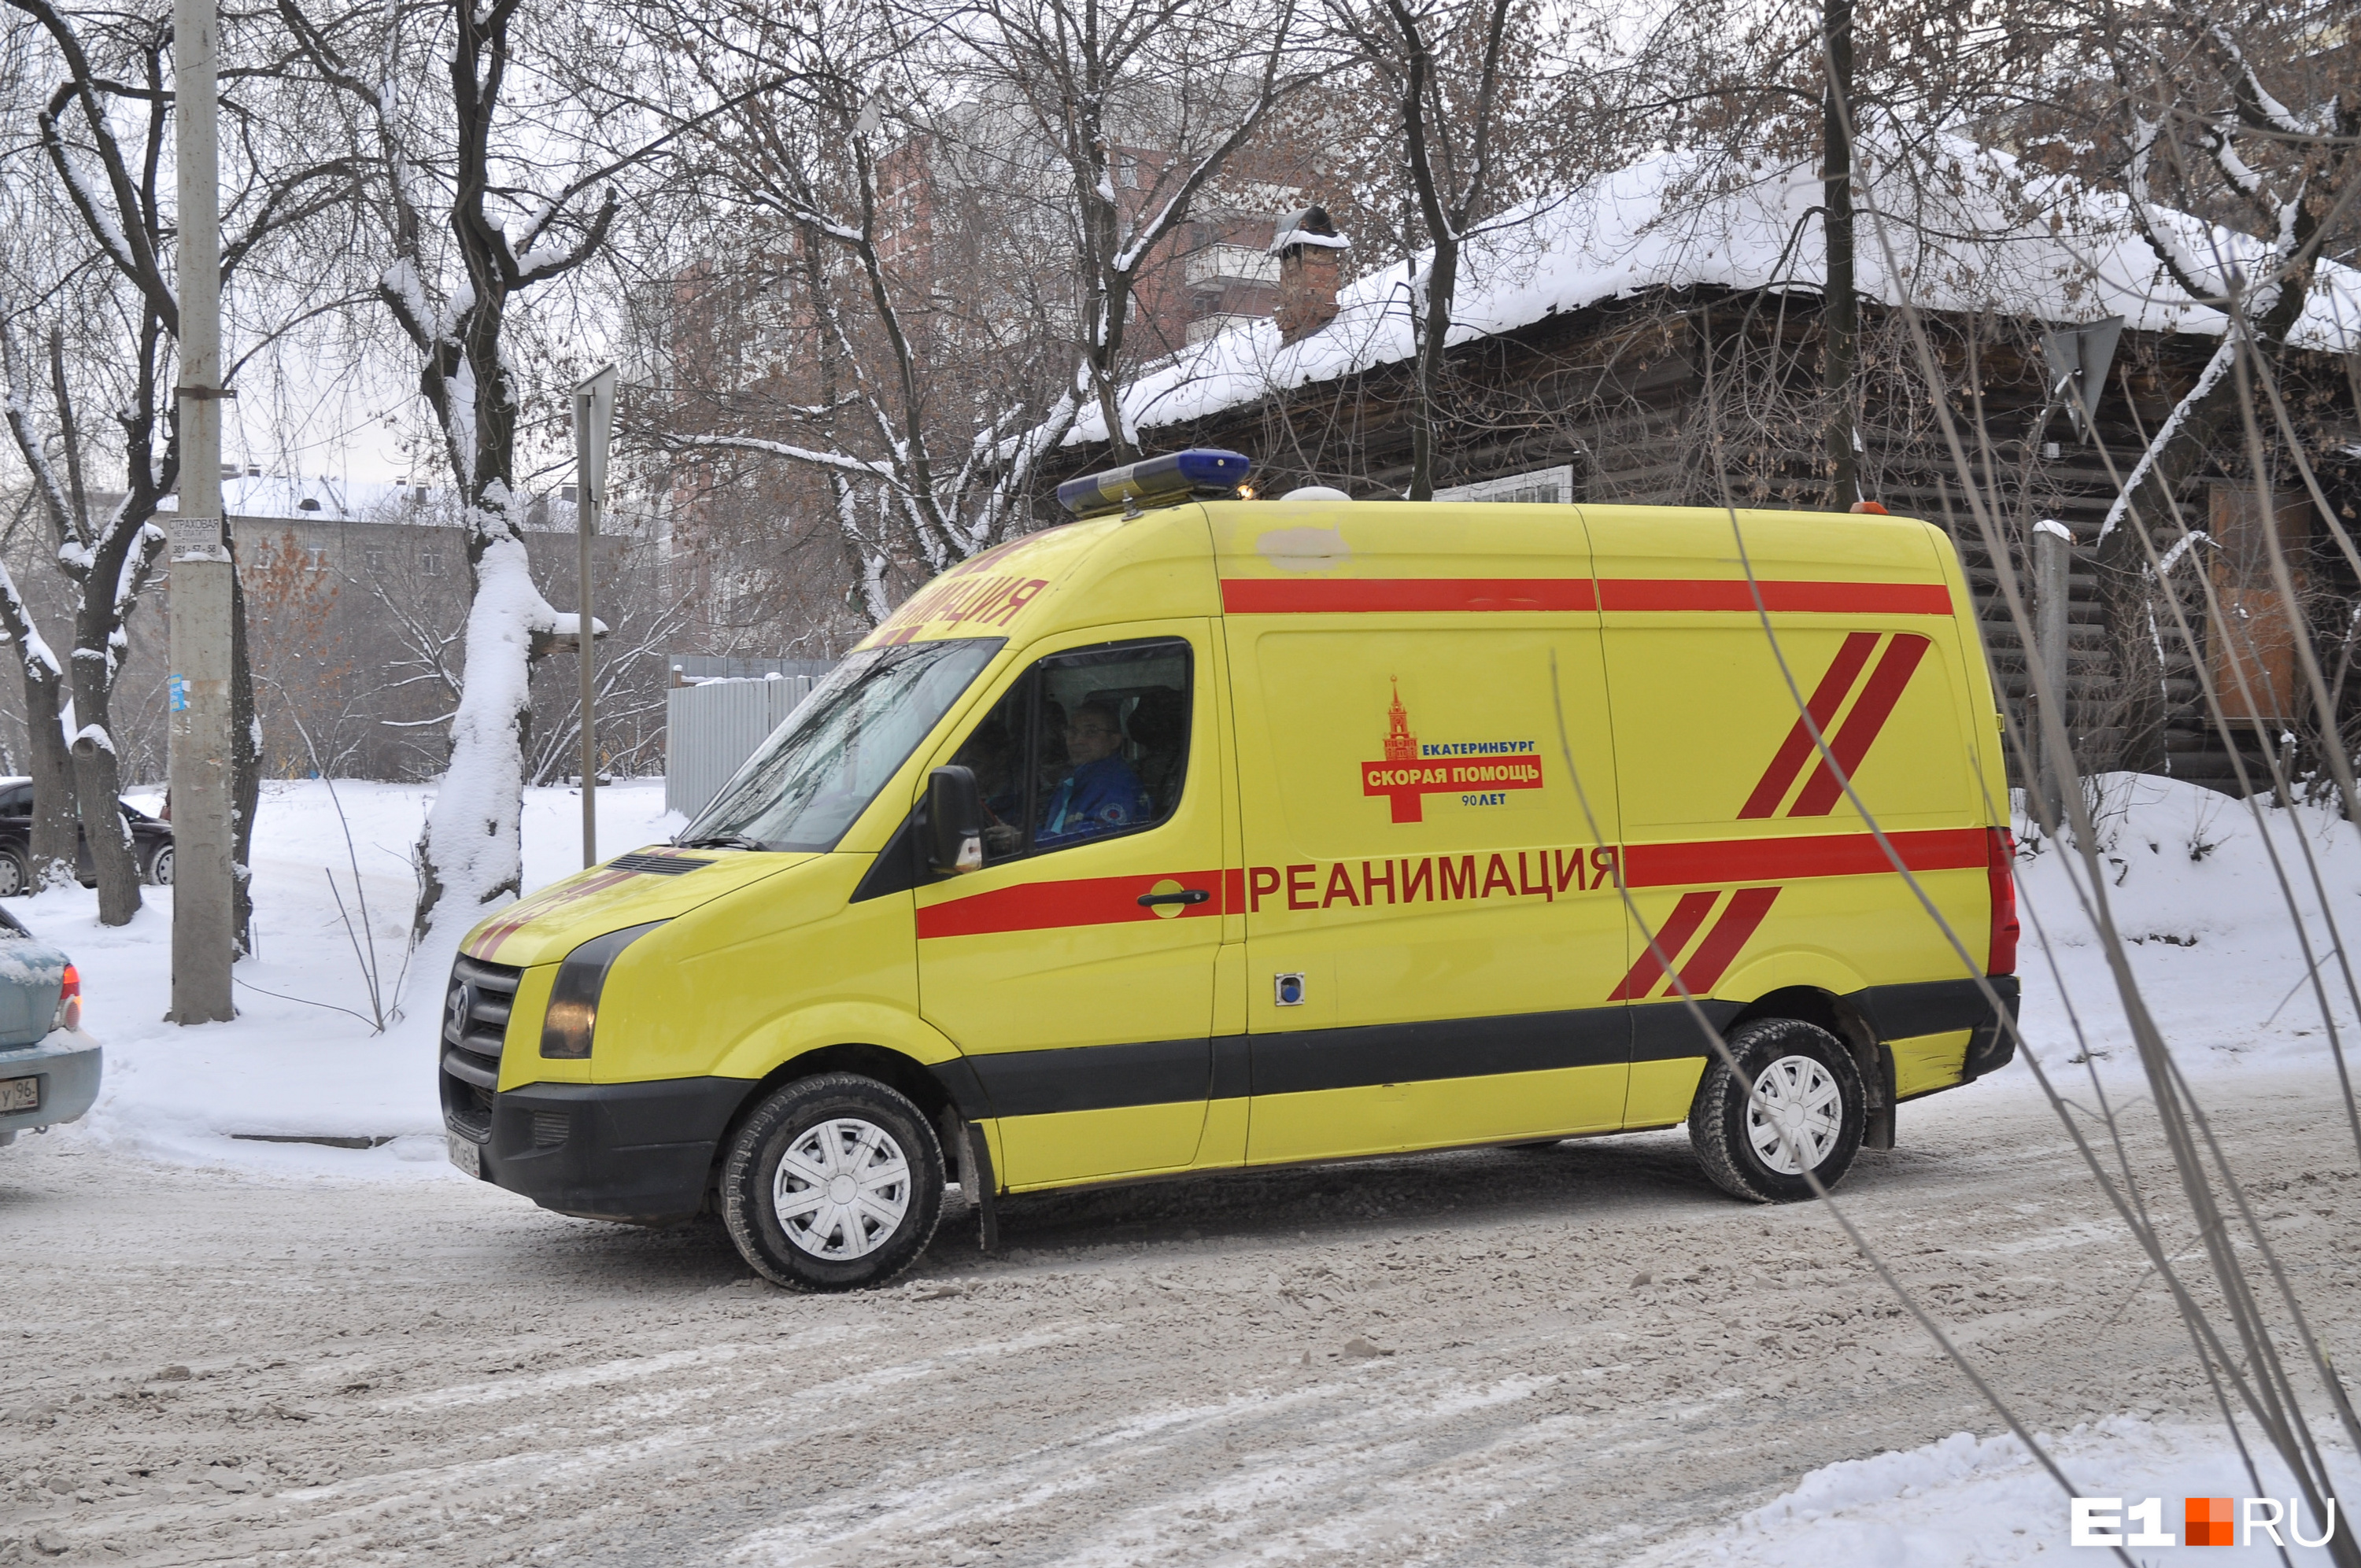 «Мы не медицинское такси!»: в скорой помощи Екатеринбурга возмутились хамским отношением пациентов